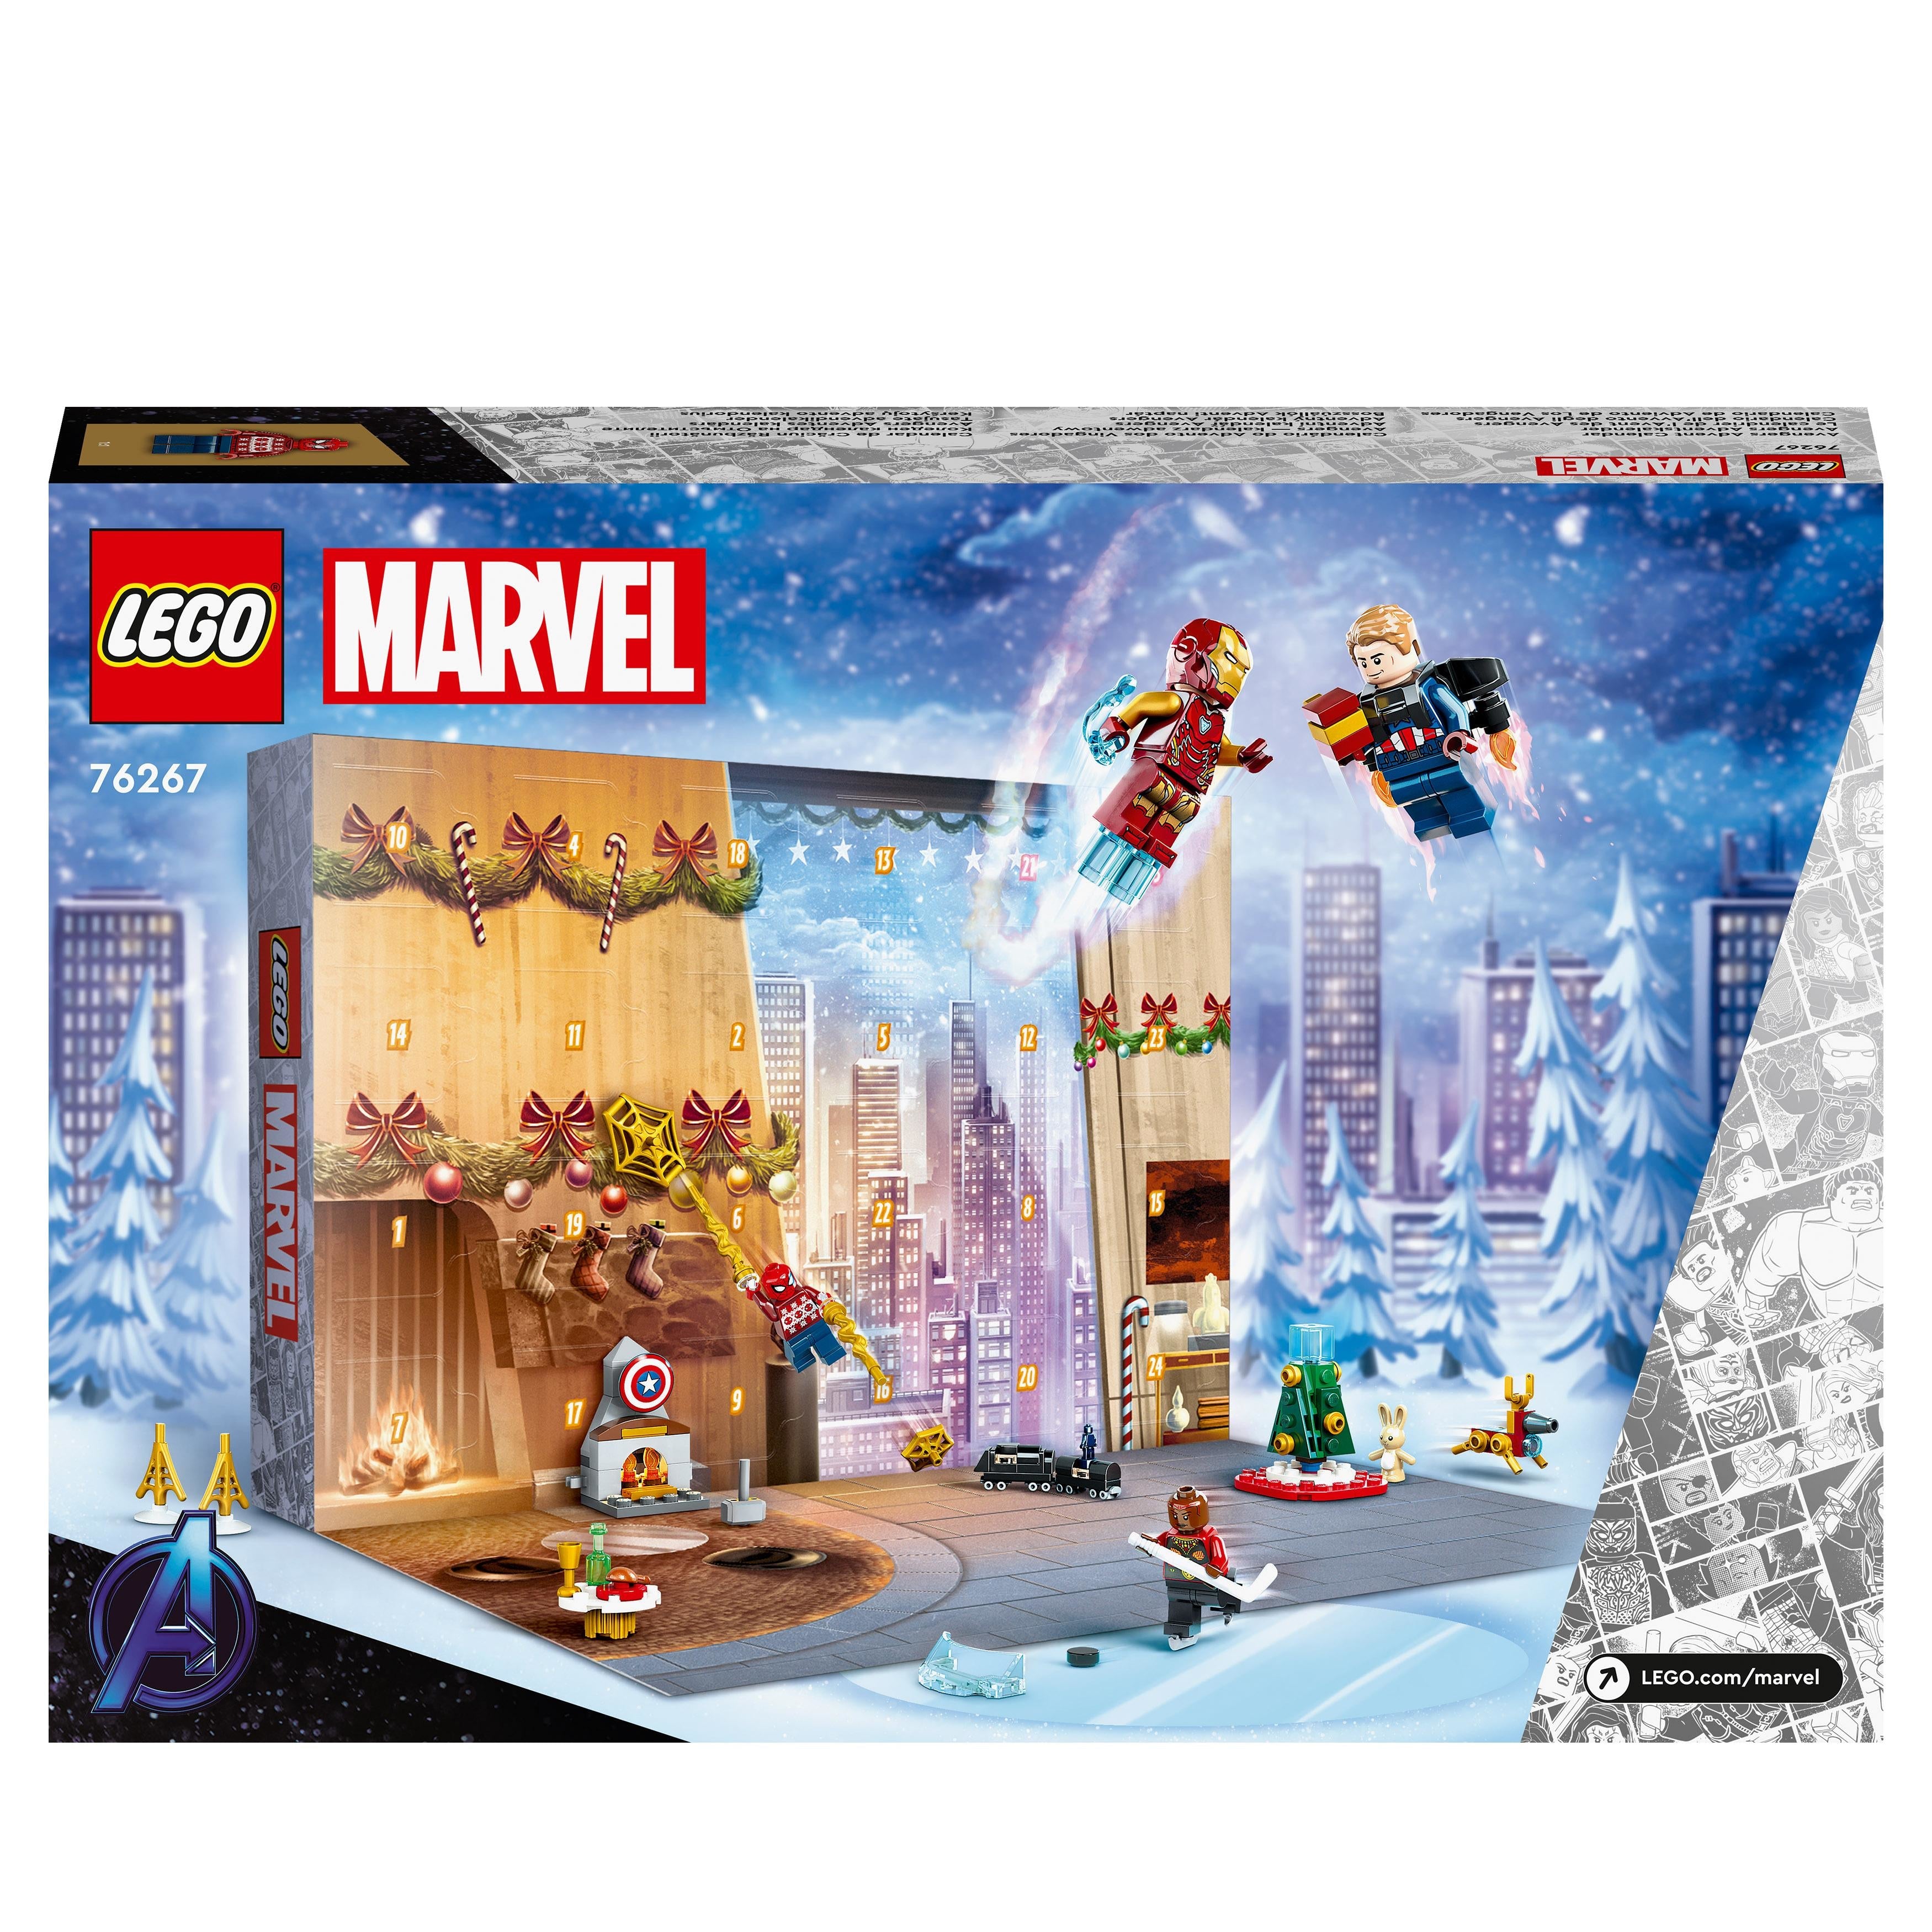 LEGO Marvel - Avengers Julkalender (76267)